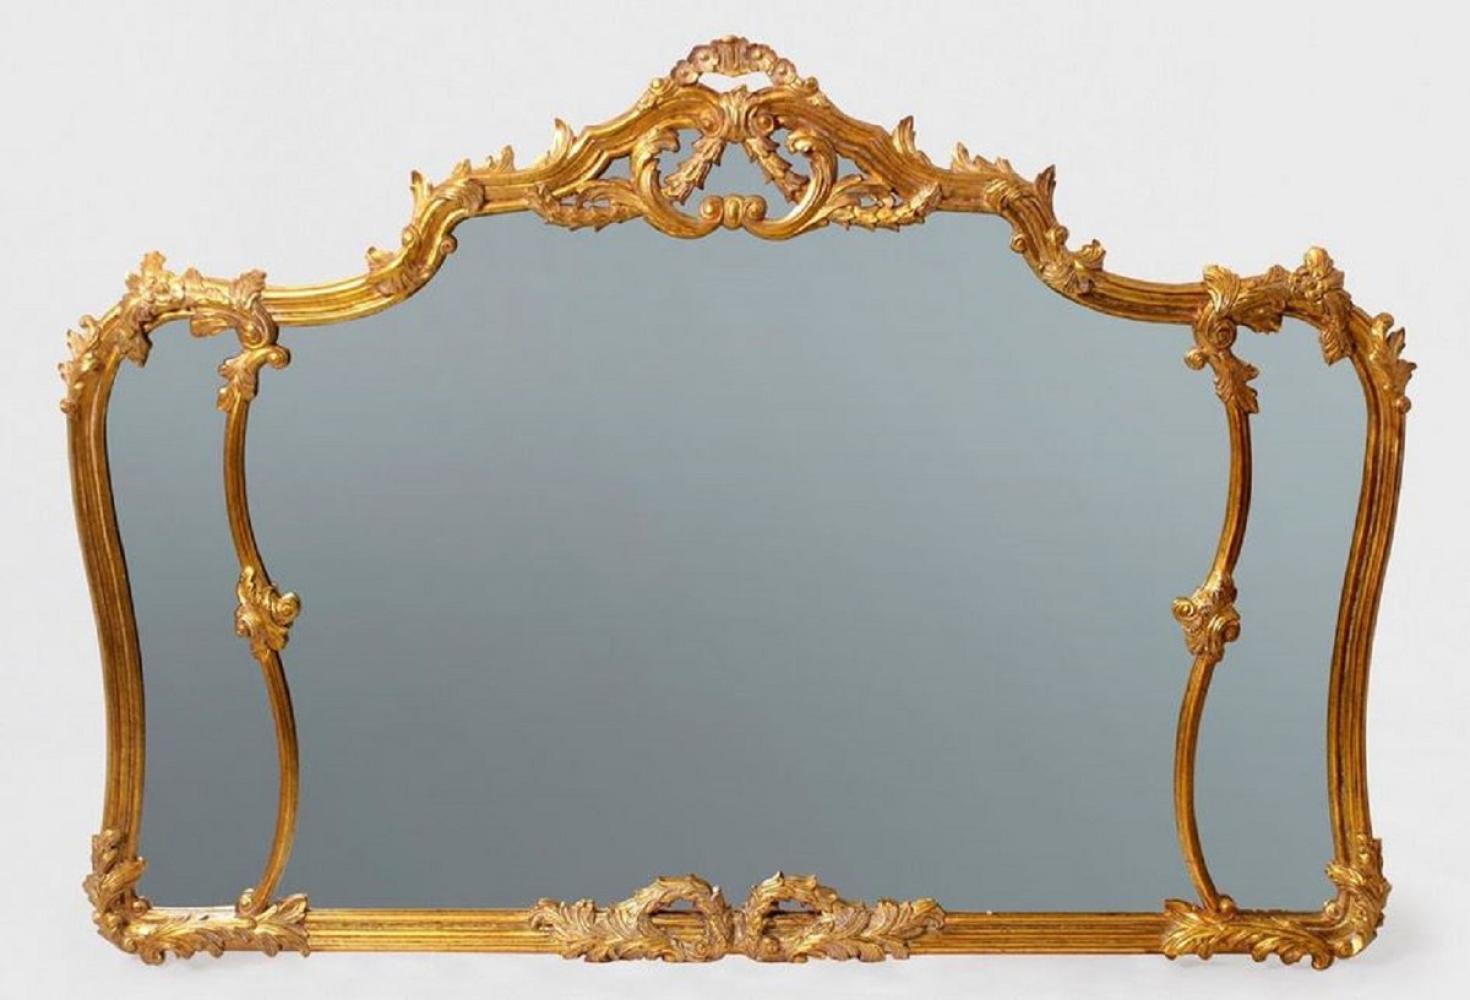 Casa Padrino Luxus Barock Spiegel Antik Gold - Prunkvoller Wandspiegel im Barockstil - Antik Stil Garderoben Spiegel - Wohnzimmer Spiegel - Barock Möbel Bild 1